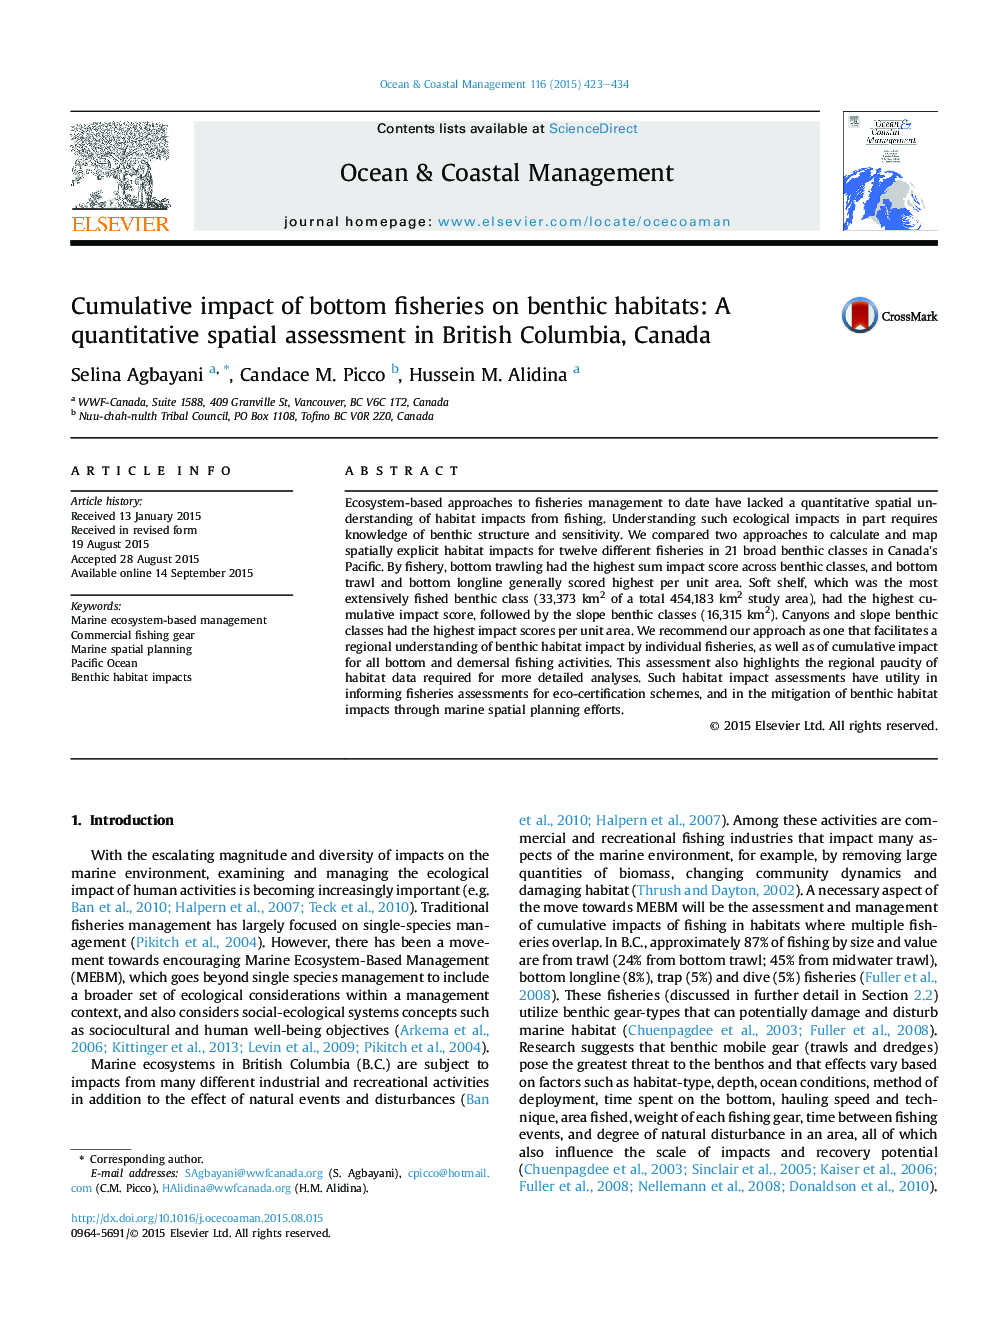 تأثیر تجمعی شکارهای پایین در زیستگاه های بت فیزیکی: ارزیابی فضایی کمی در بریتیش کلمبیا، کانادا 